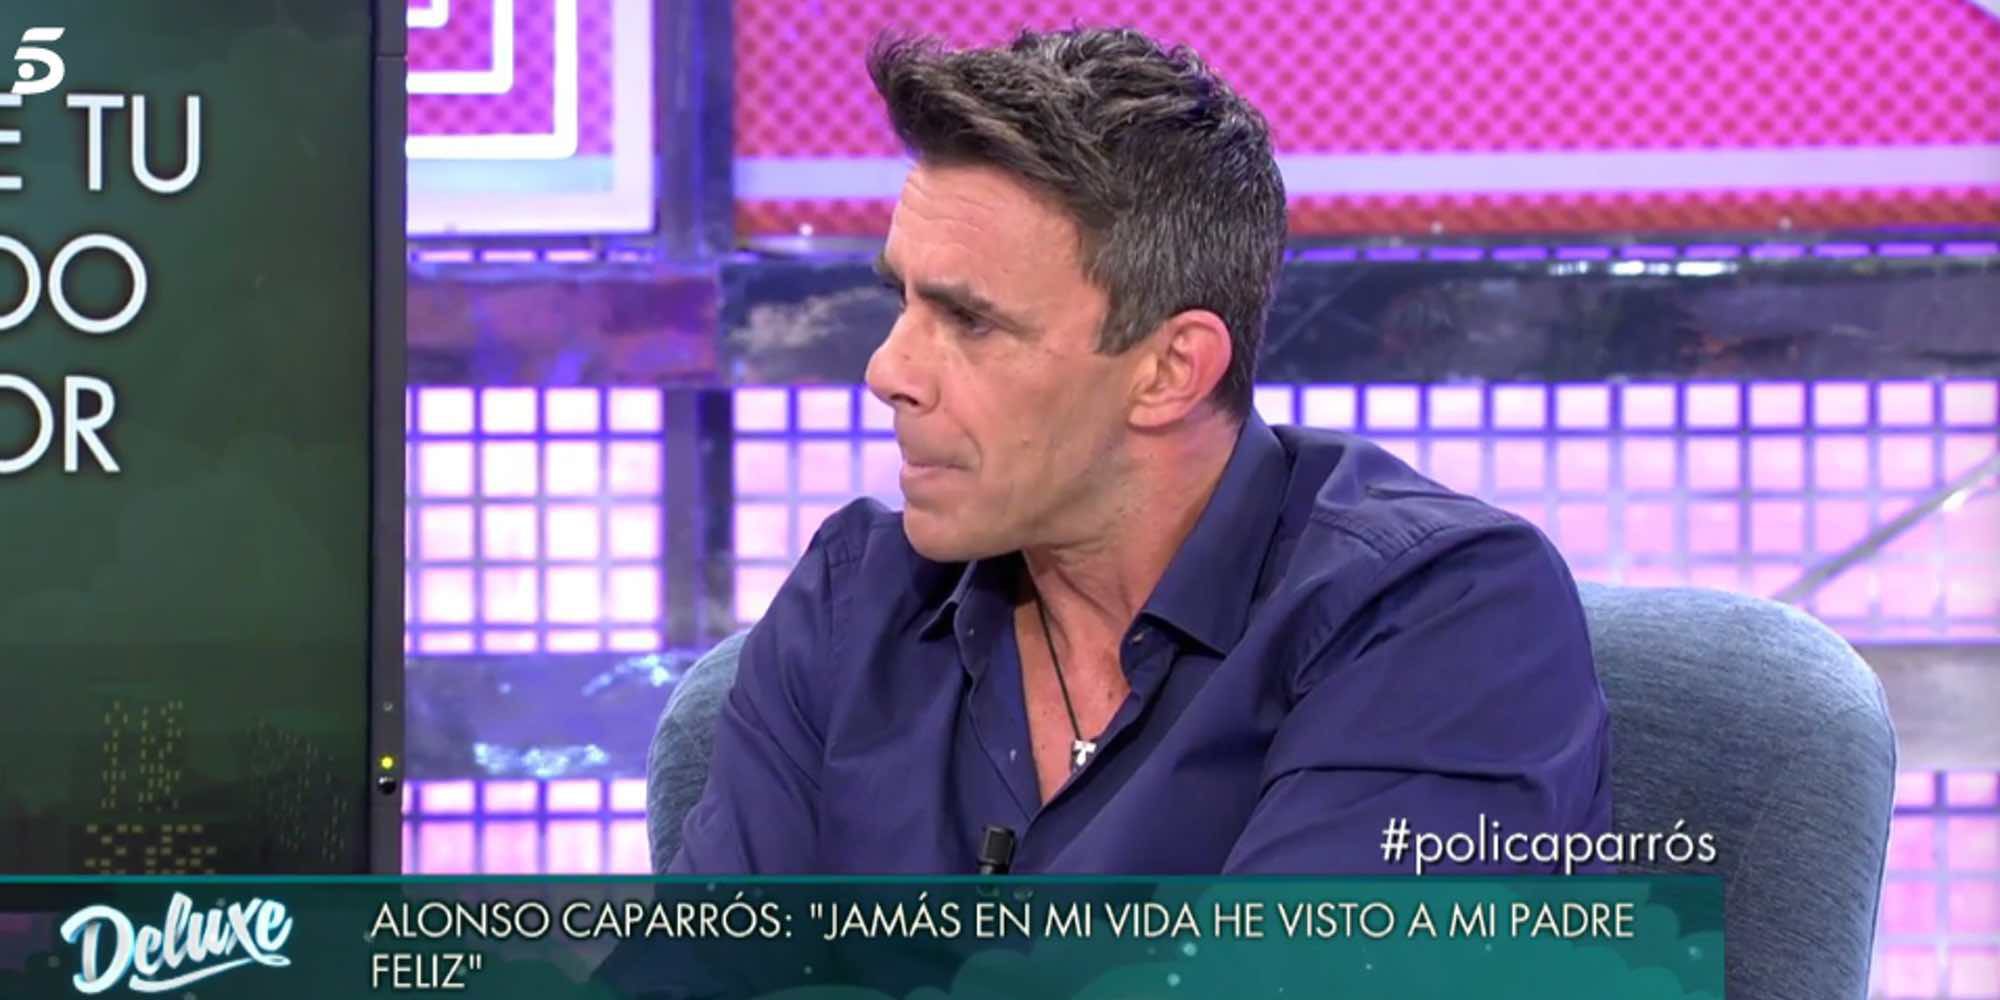 Alonso Caparrós desiste en su intento de reconciliación: "Tengo que aprender a vivir sin mis padres"